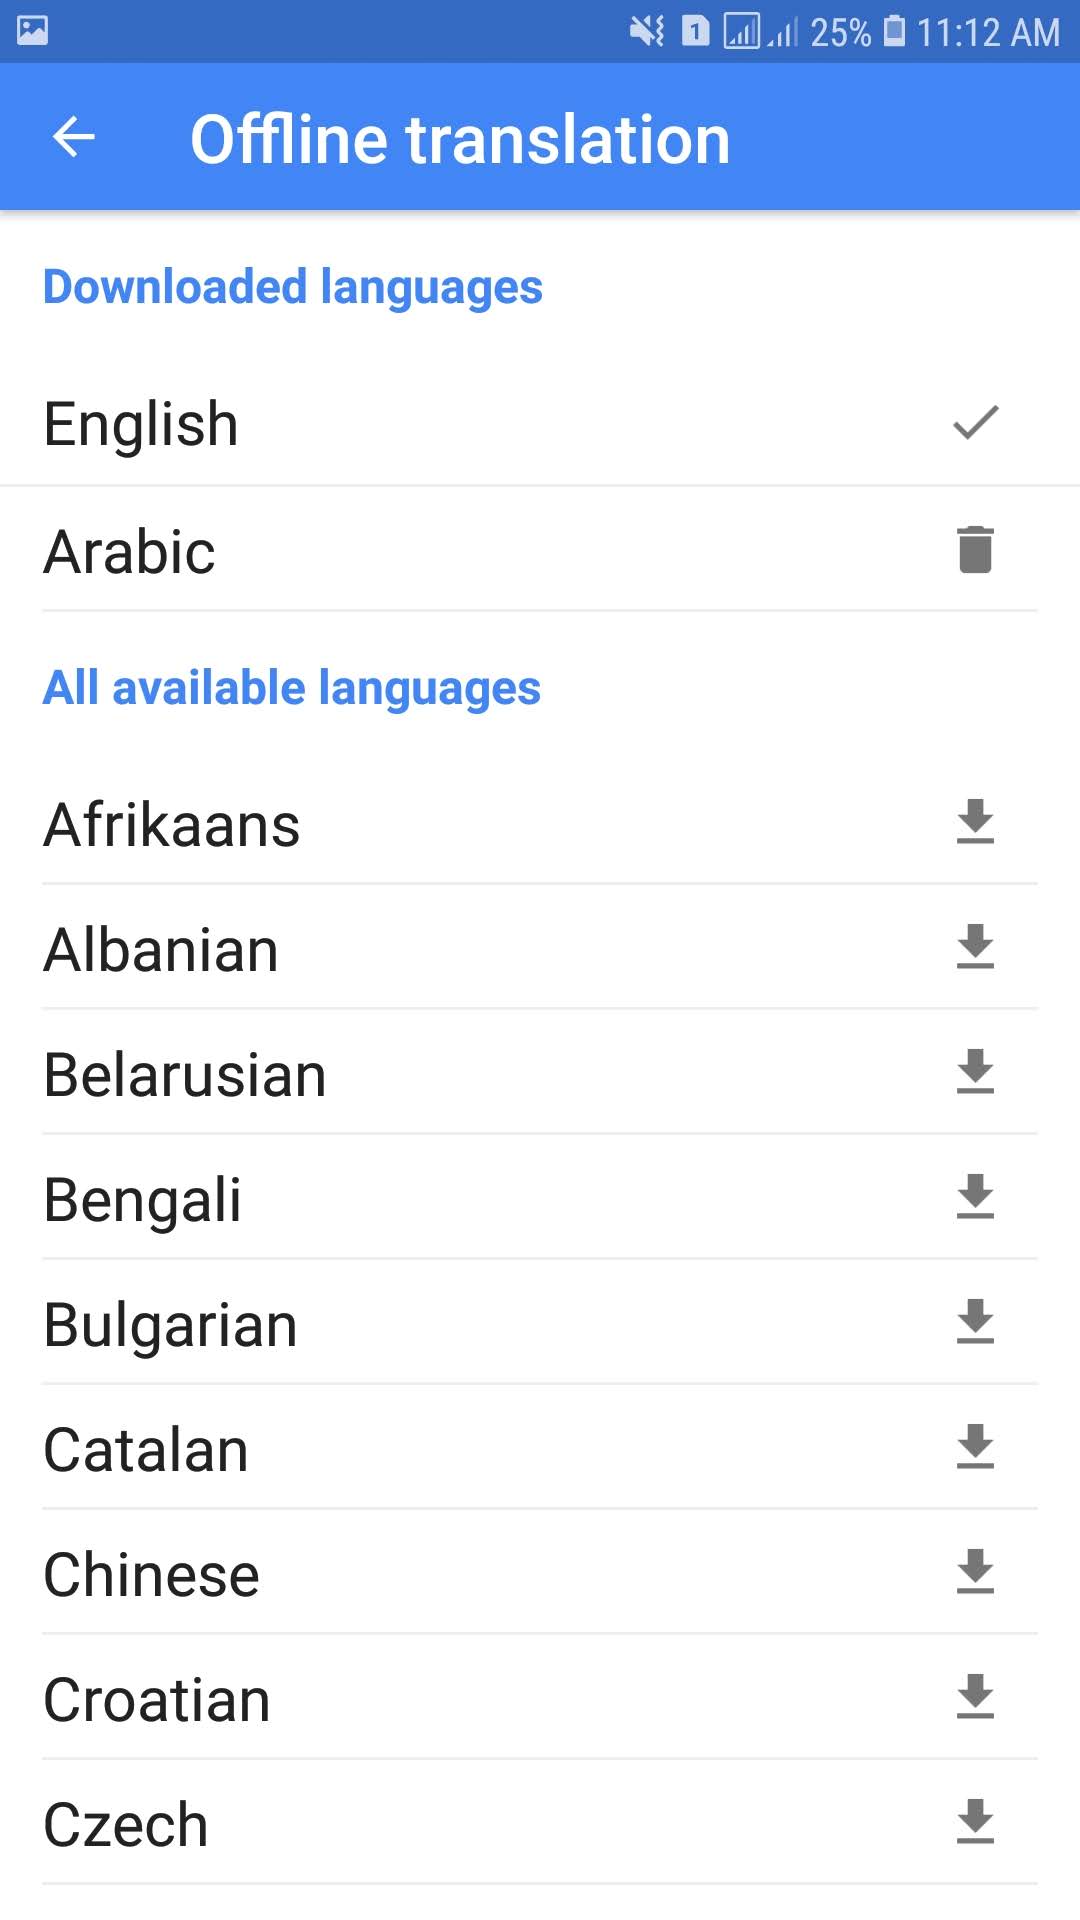 اختر اللغات التى تريد استخدامها بدون انترنت على تطبيق ترجمة جوجل للأندرويد